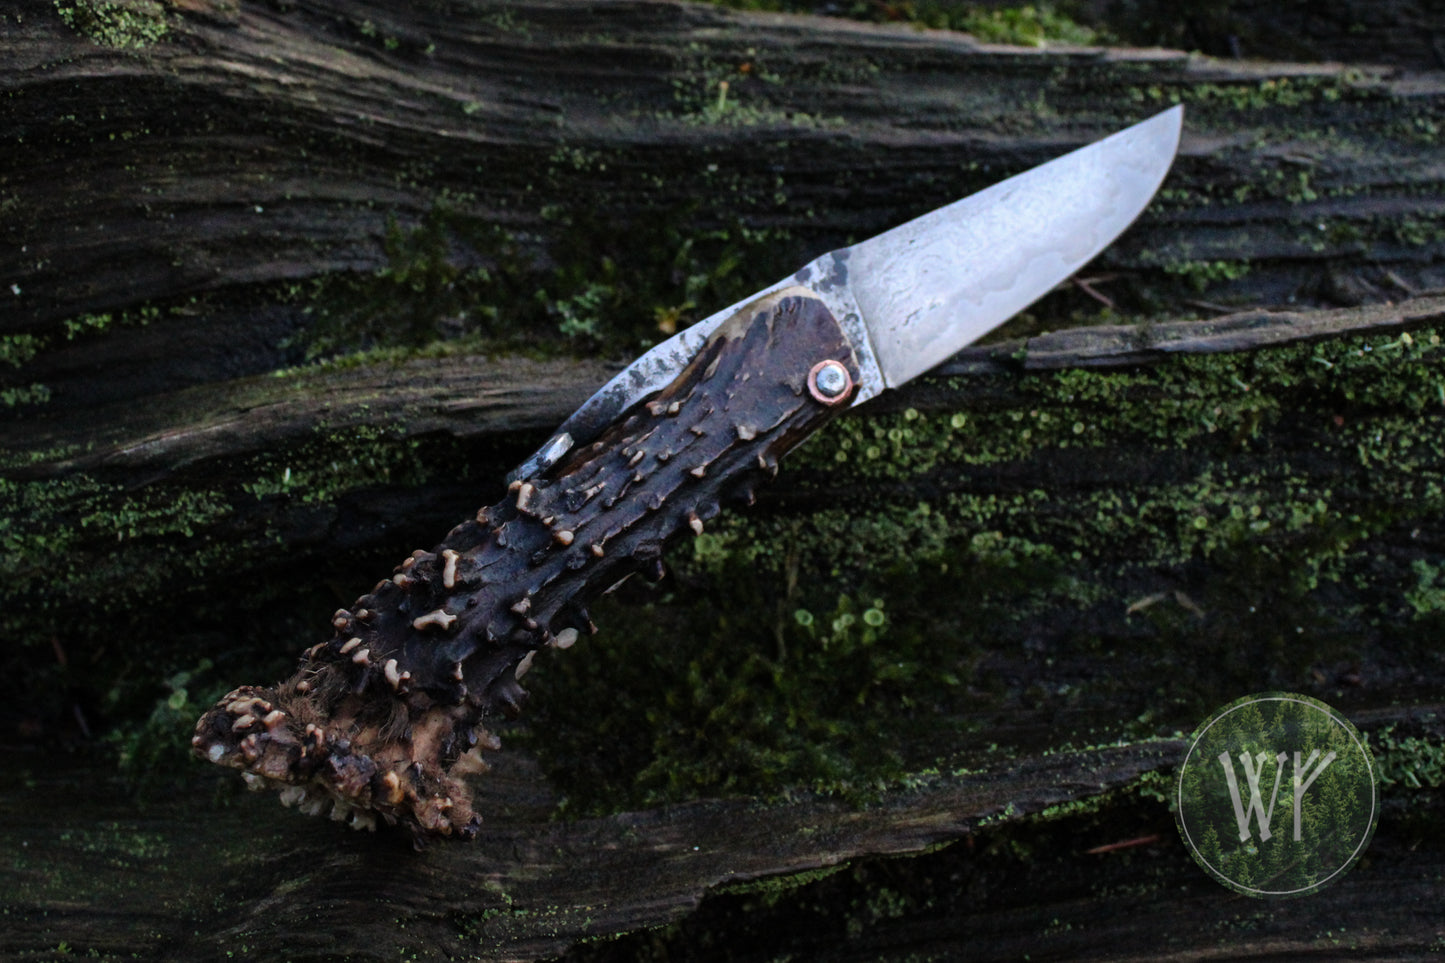 [RESERVED FOR ERNEST] Hand-forged Viking friction folder / Scottish Roe Deer Antler Handle / Wrought Iron & Steel San Mai Blade / UK Legal Pocket Knife